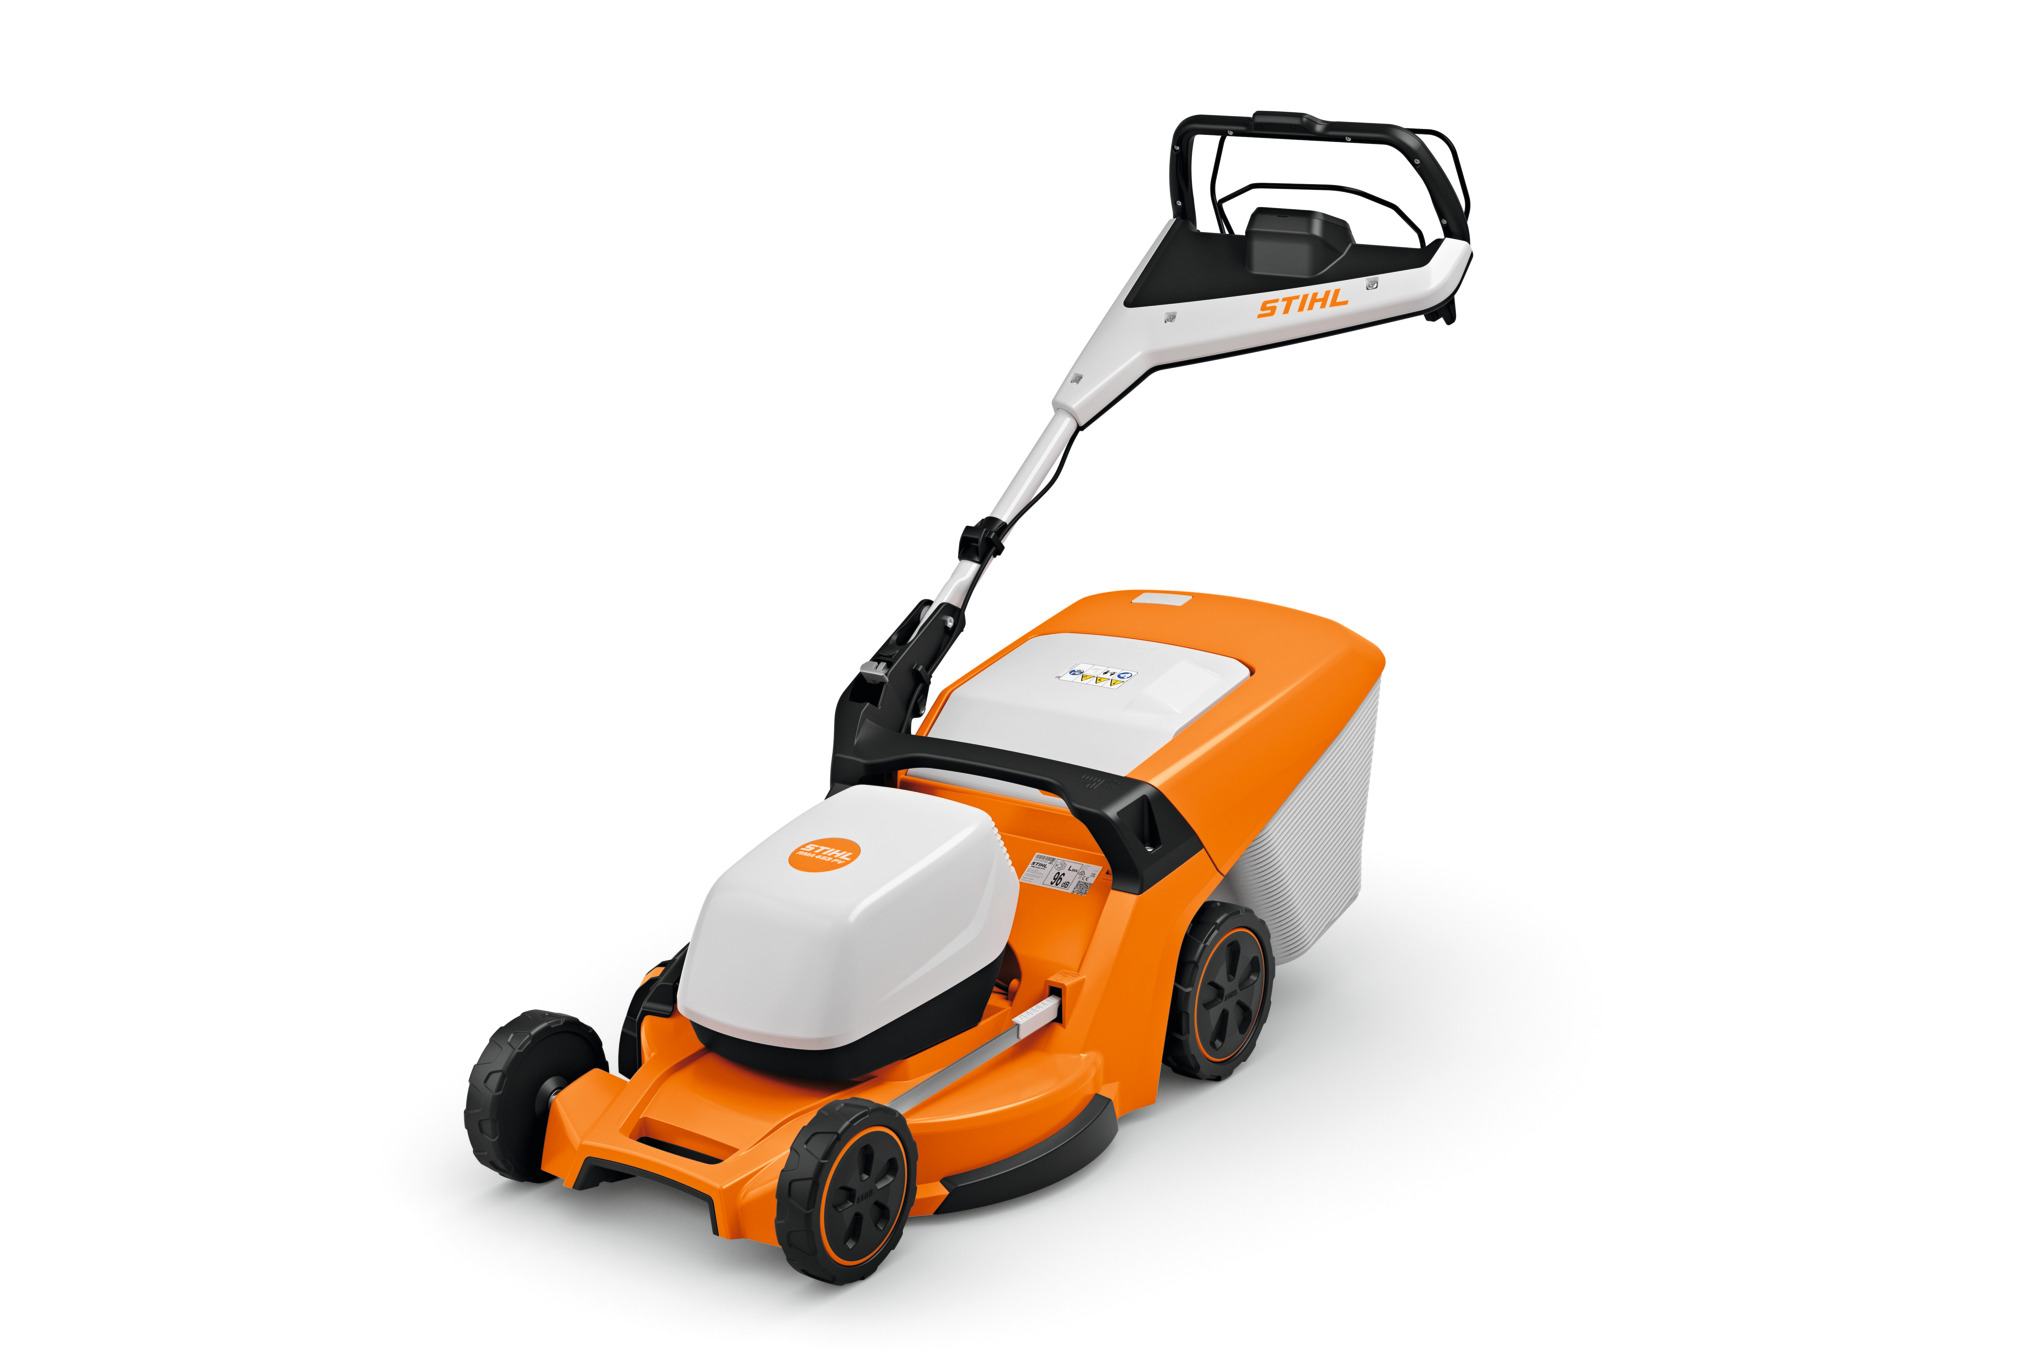 RMA 453 PV Cordless Lawn Mower